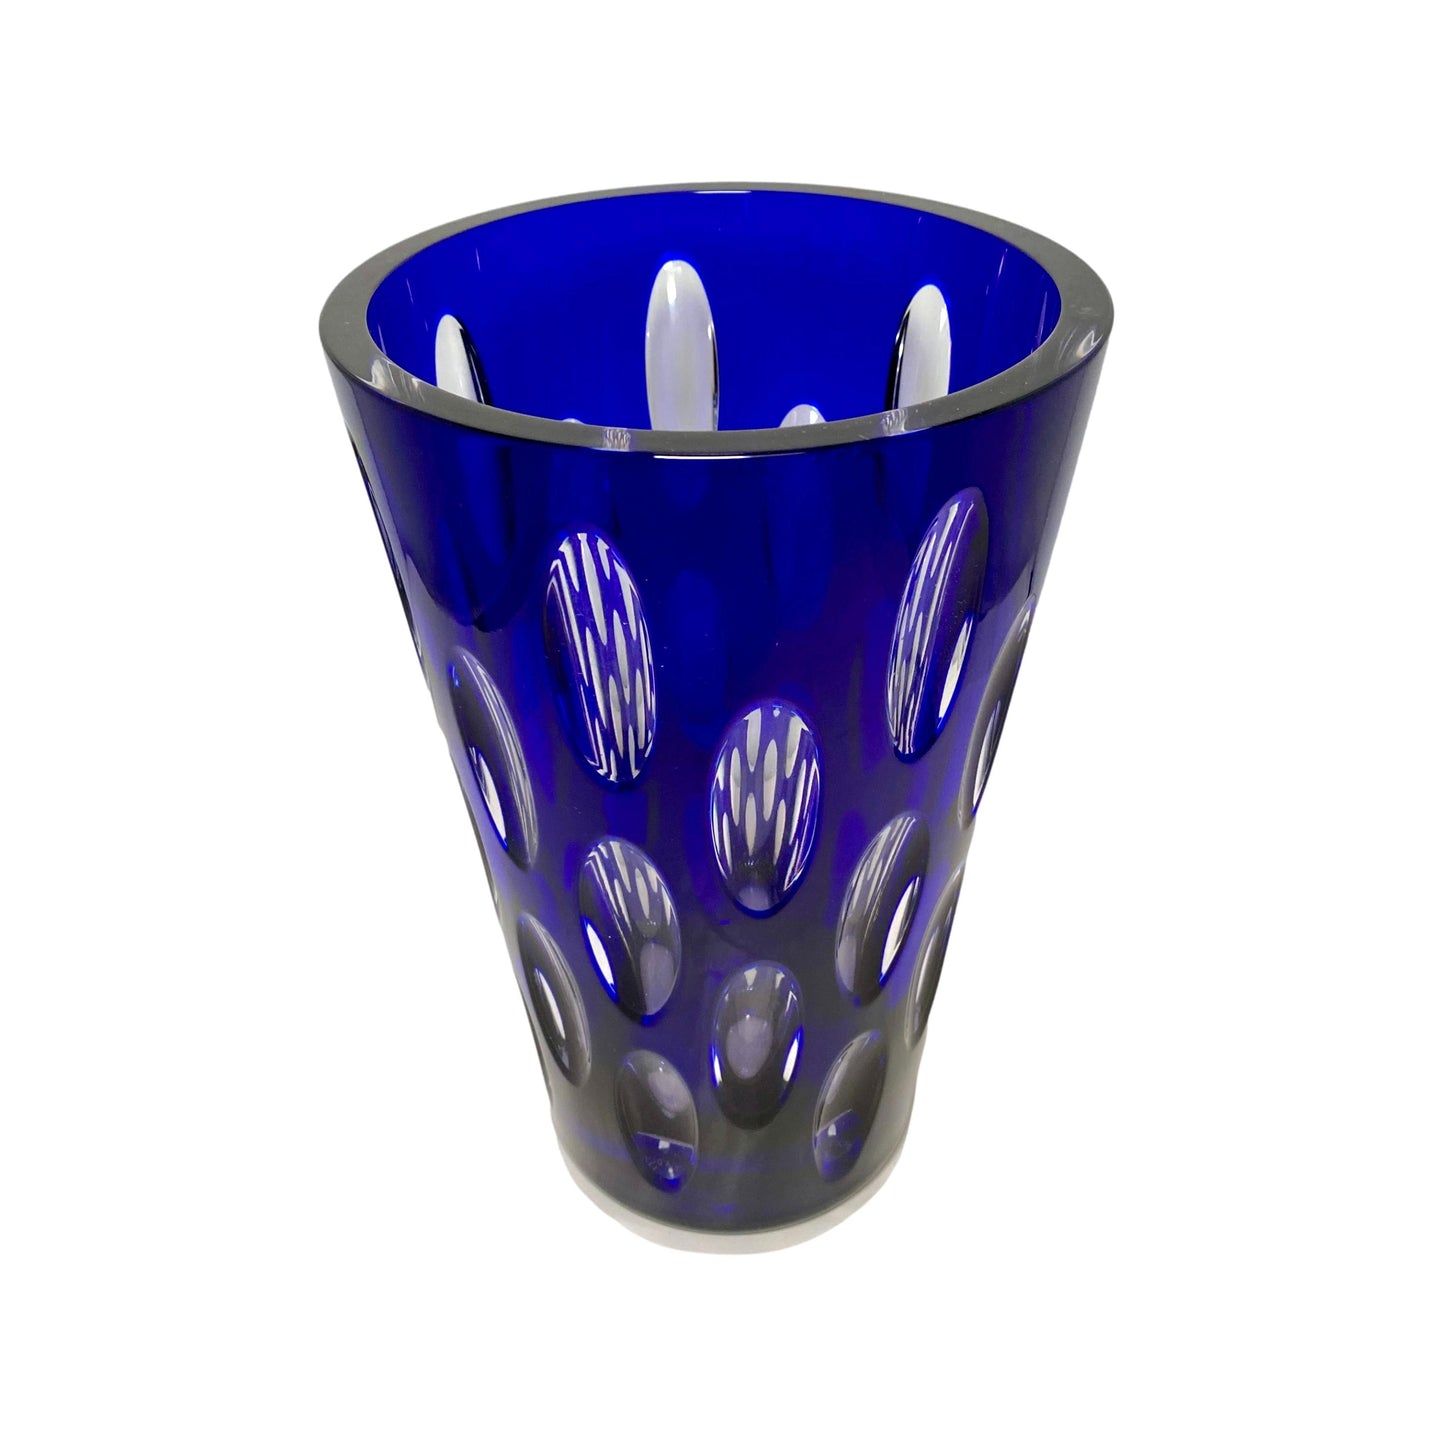 Signed Faberge Cobalt Blue Vase